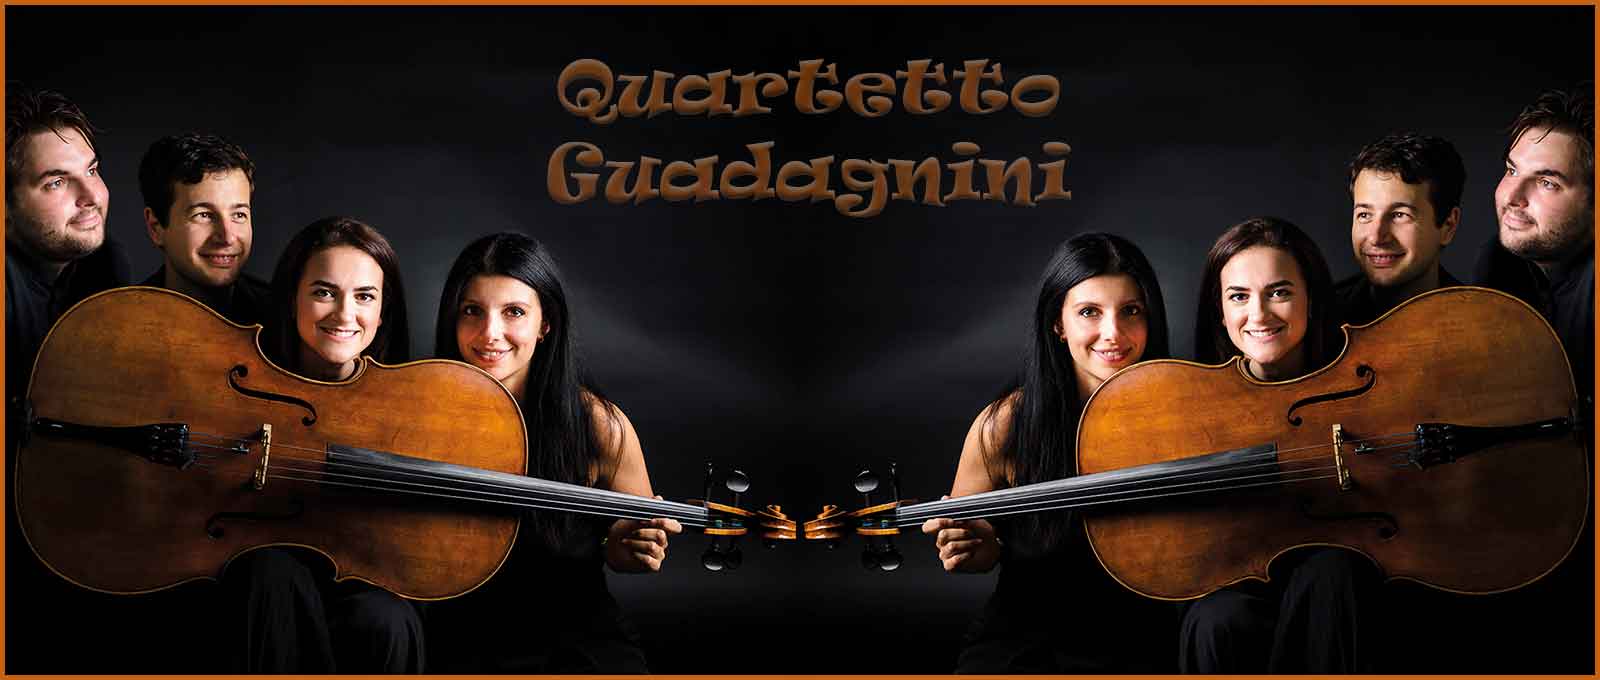 Auditorium Ennio Morricone “Il Quartetto Guadagnini”. Il Quartetto Guadagnini